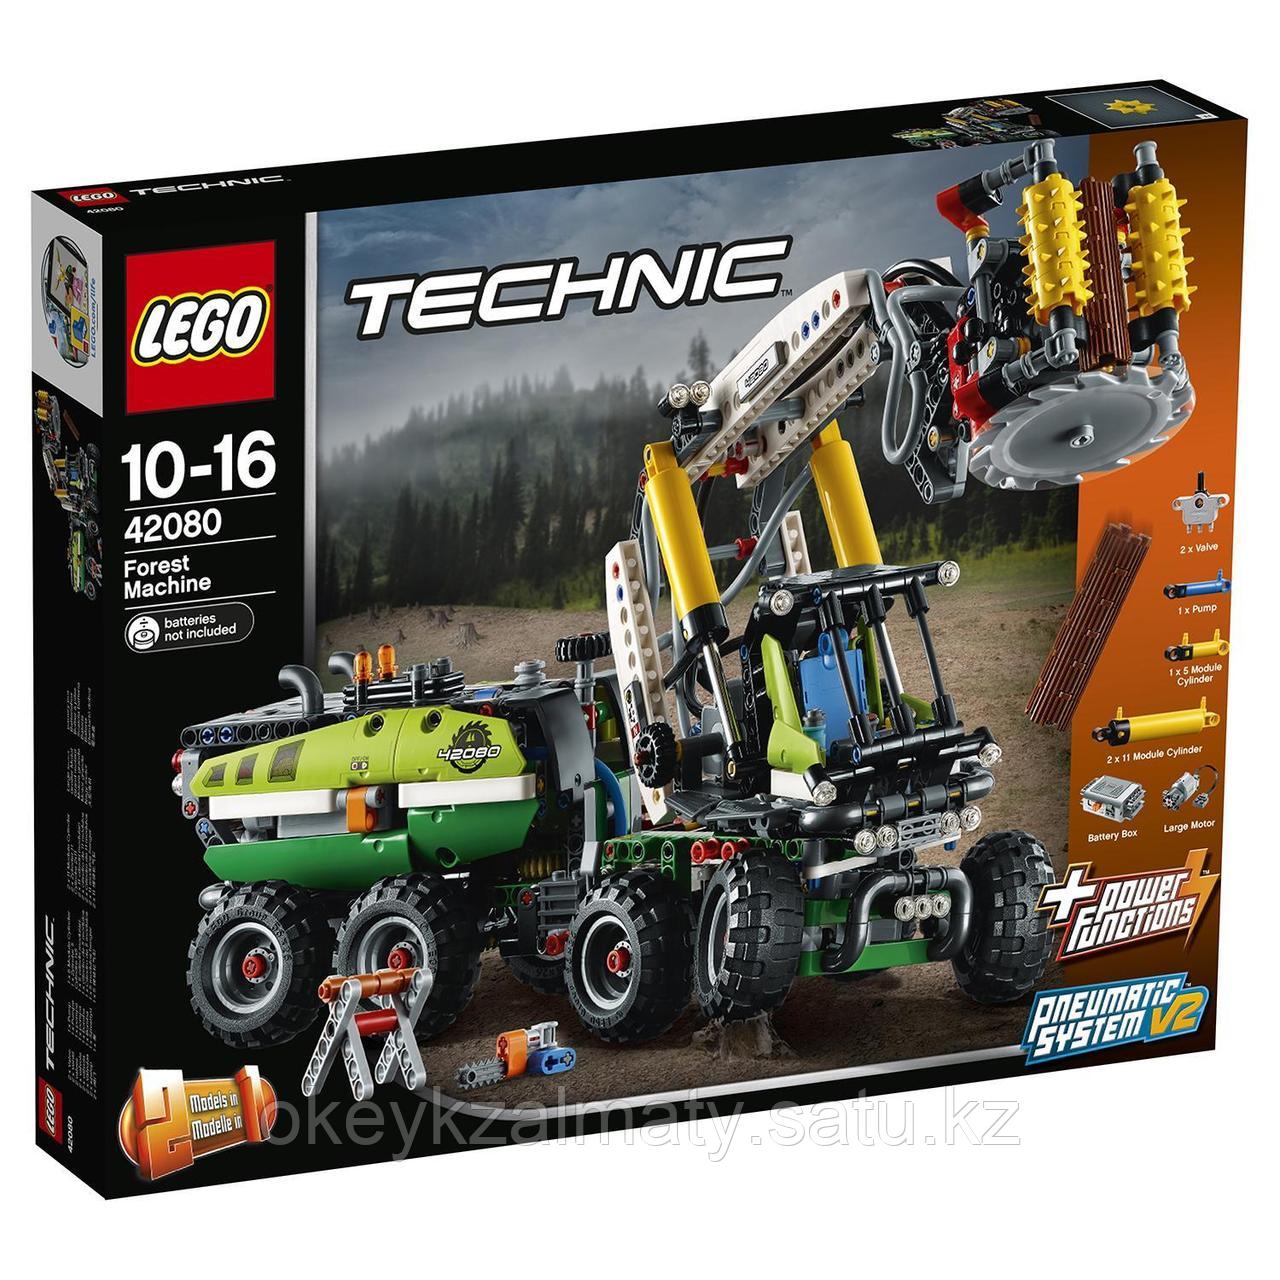 LEGO Technic: Лесозаготовительная машина 42080